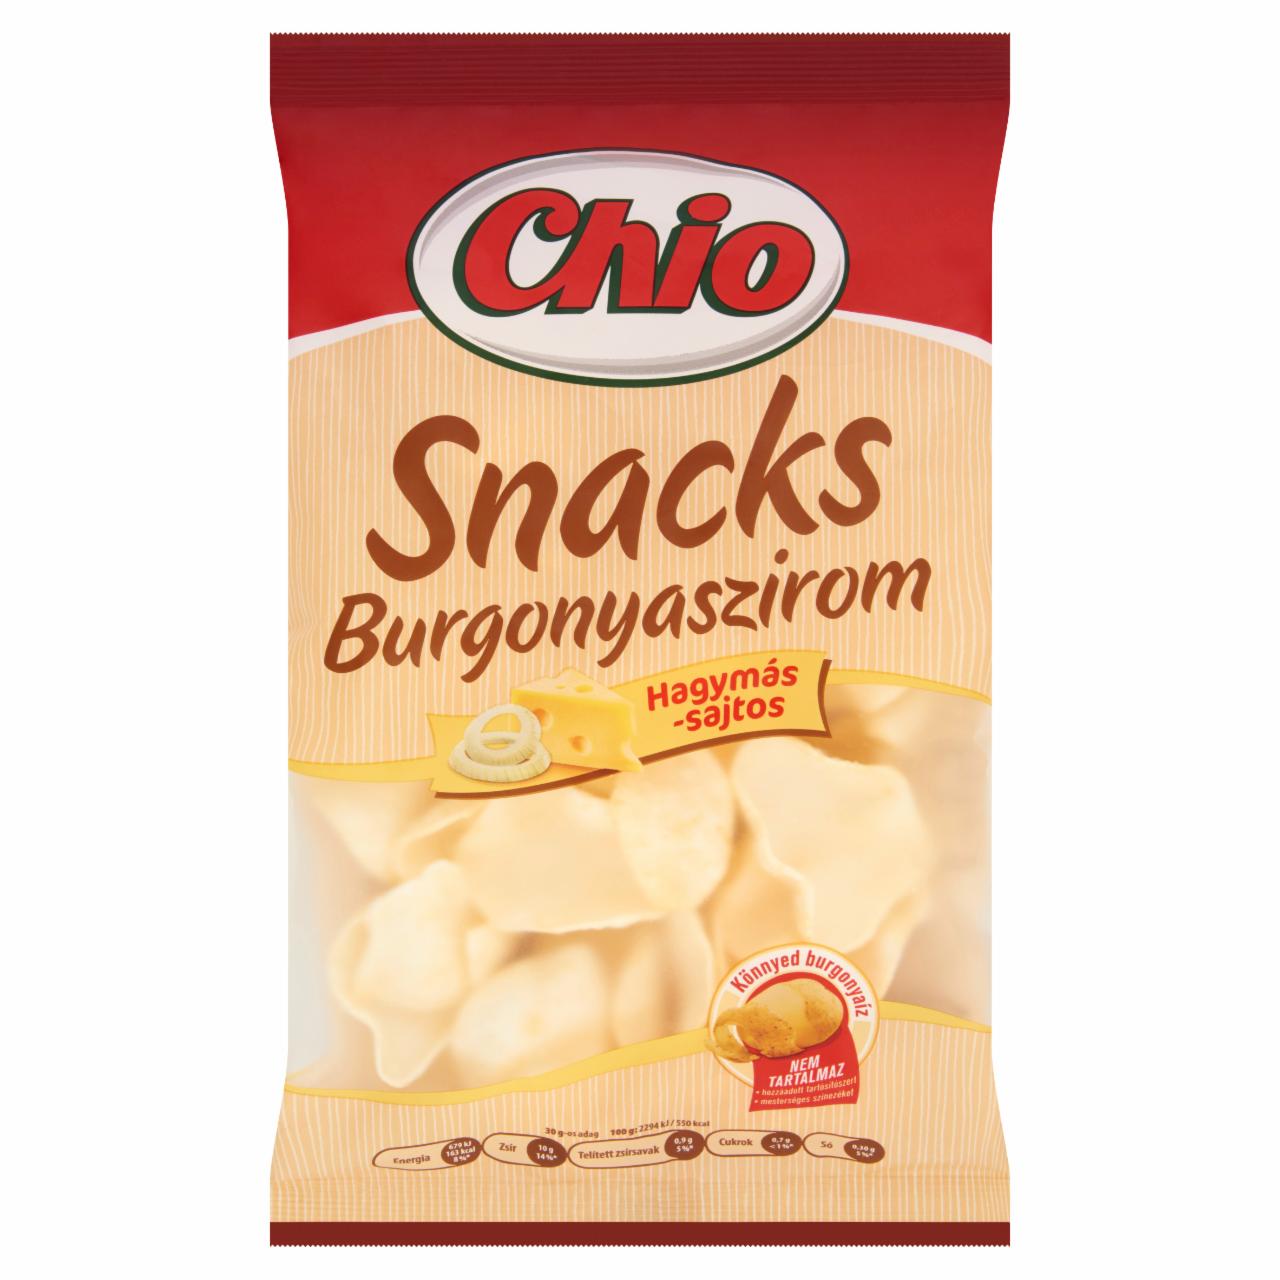 Képek - Chio Snacks hagymás-sajtos burgonyaszirom 40 g